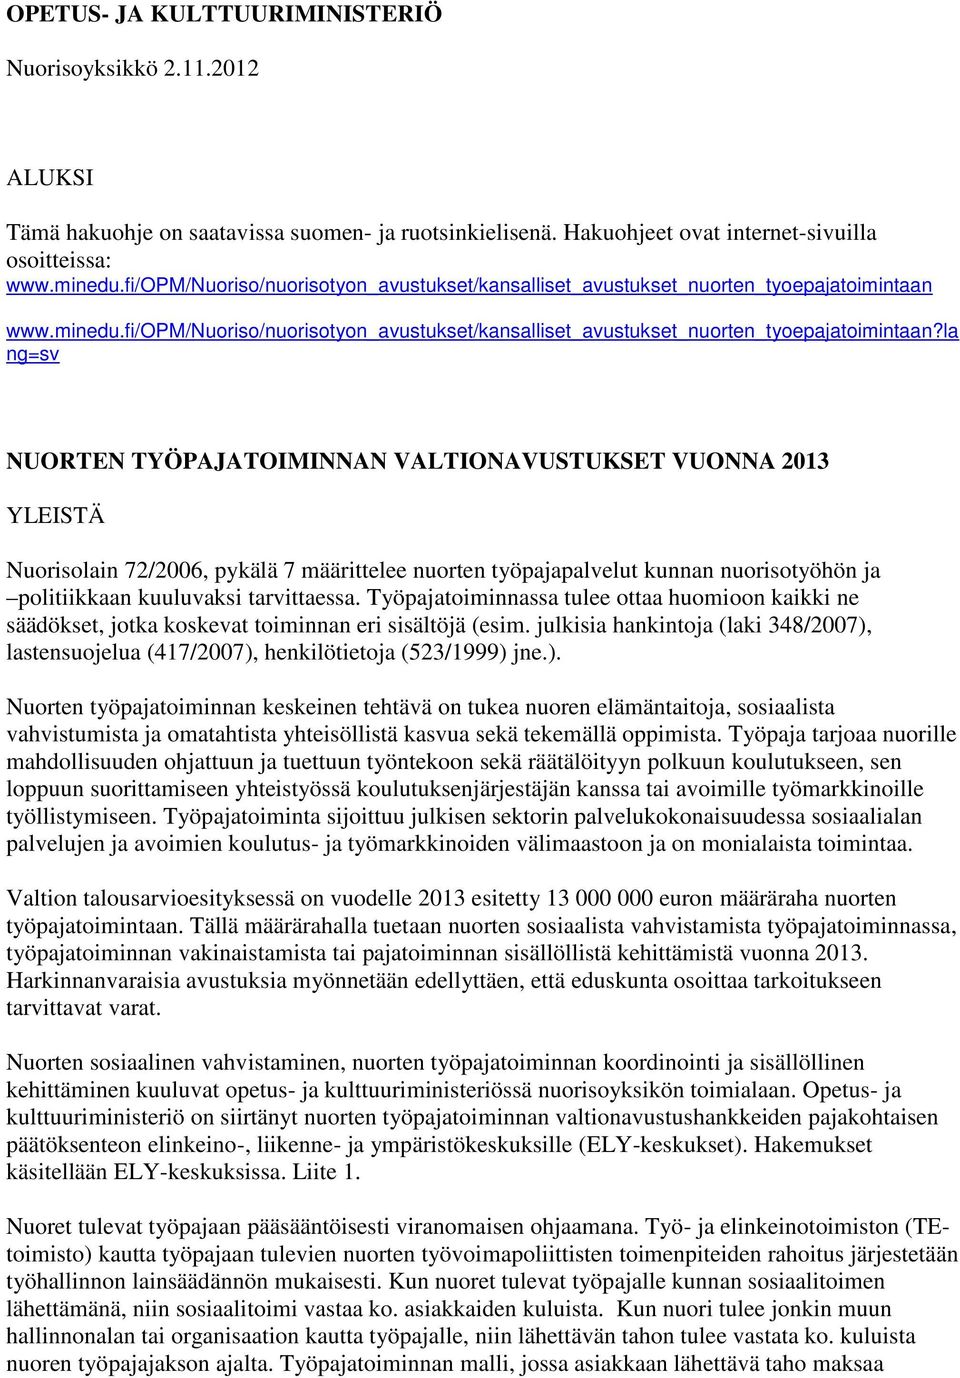 www.minedu.fi/opm/nuoriso/nuorisotyon_avustukset/kansalliset_avustukset_nuorten_tyoepajatoimintaan?